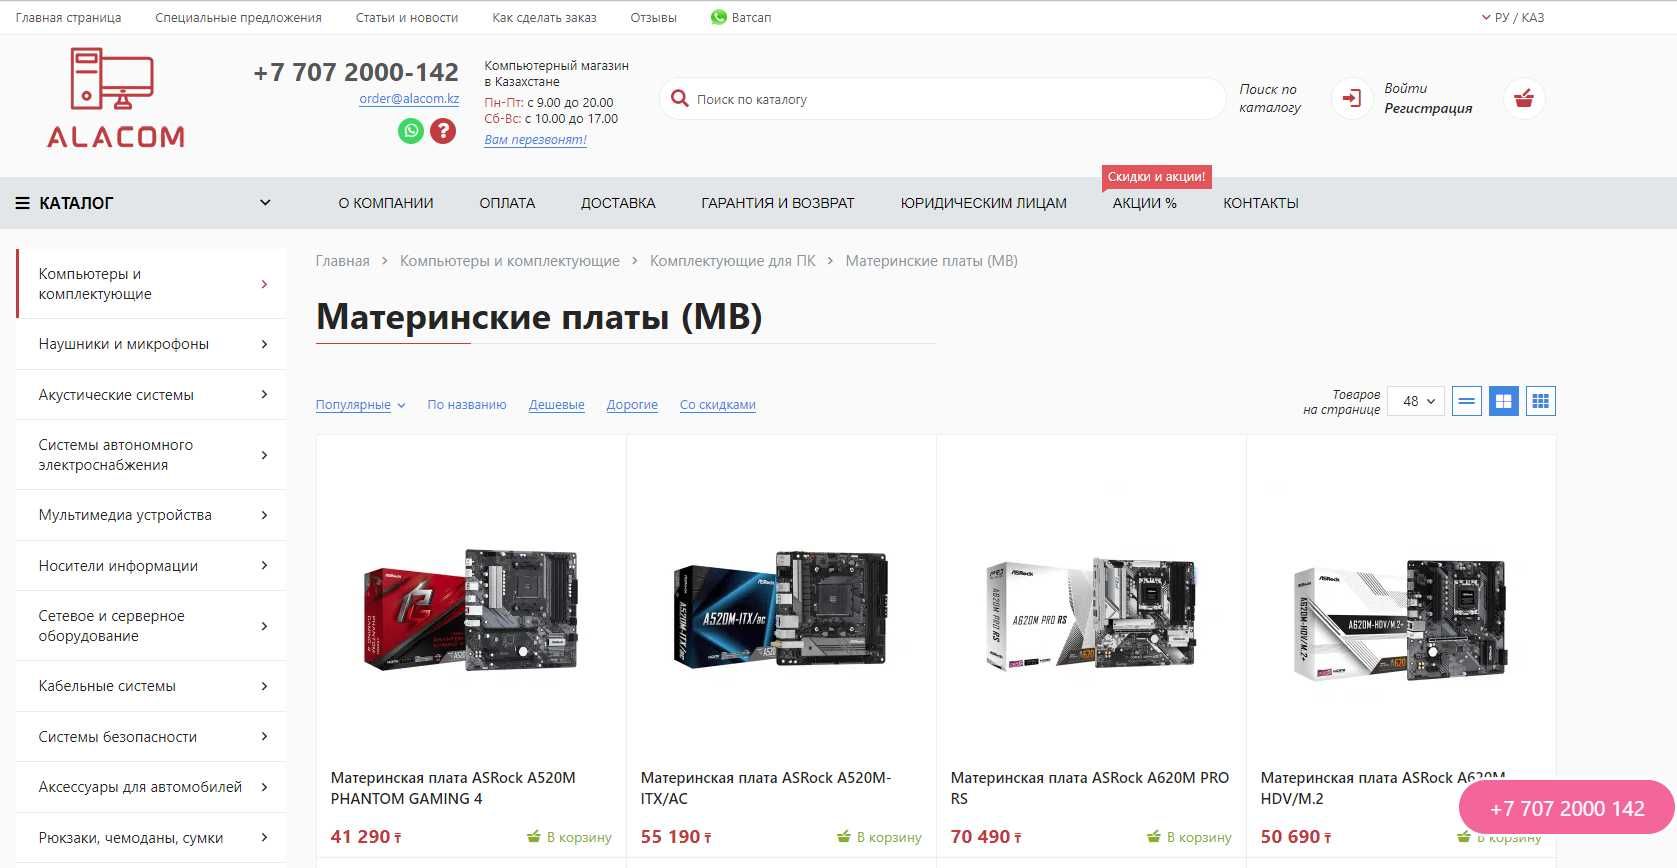 Интернет магазин компьютерной техники и электроники в Казахстане